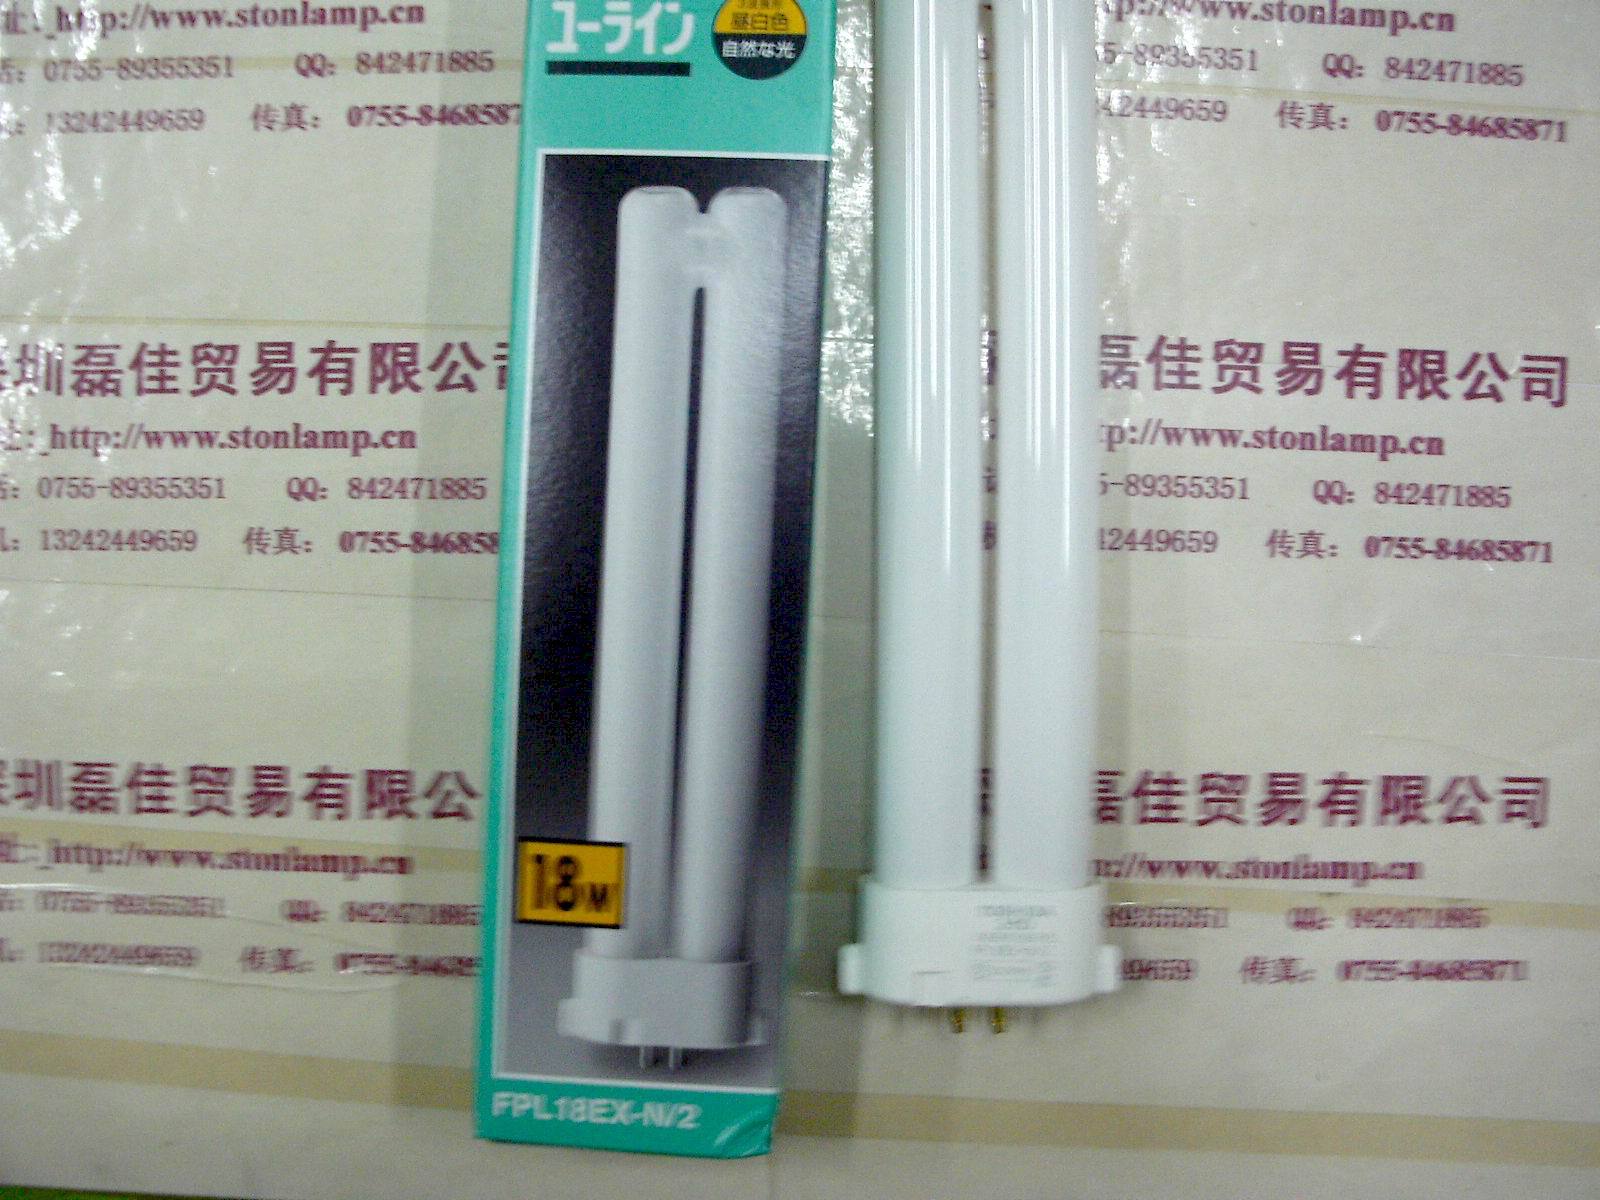 东芝FPL18EX-N/2三波长灯管